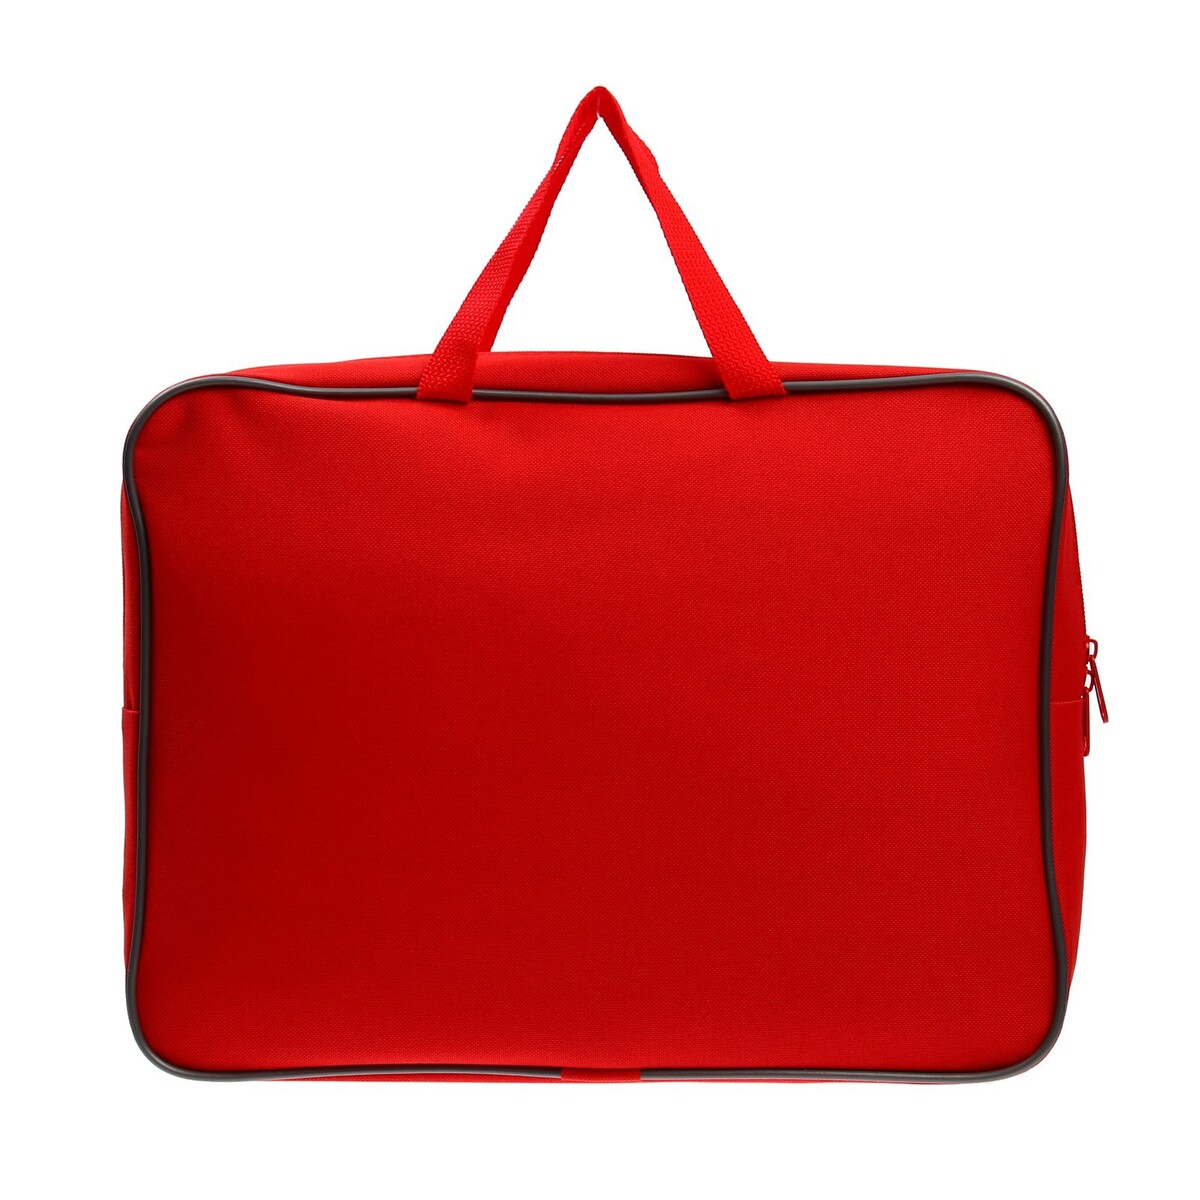 Папка с ручками а4, 360 х 270 х 80 мм, текстильная, внутренний карман, красная 1ш48 сумка текстильная одно 32 3 38 отд на молнии н карман желтый